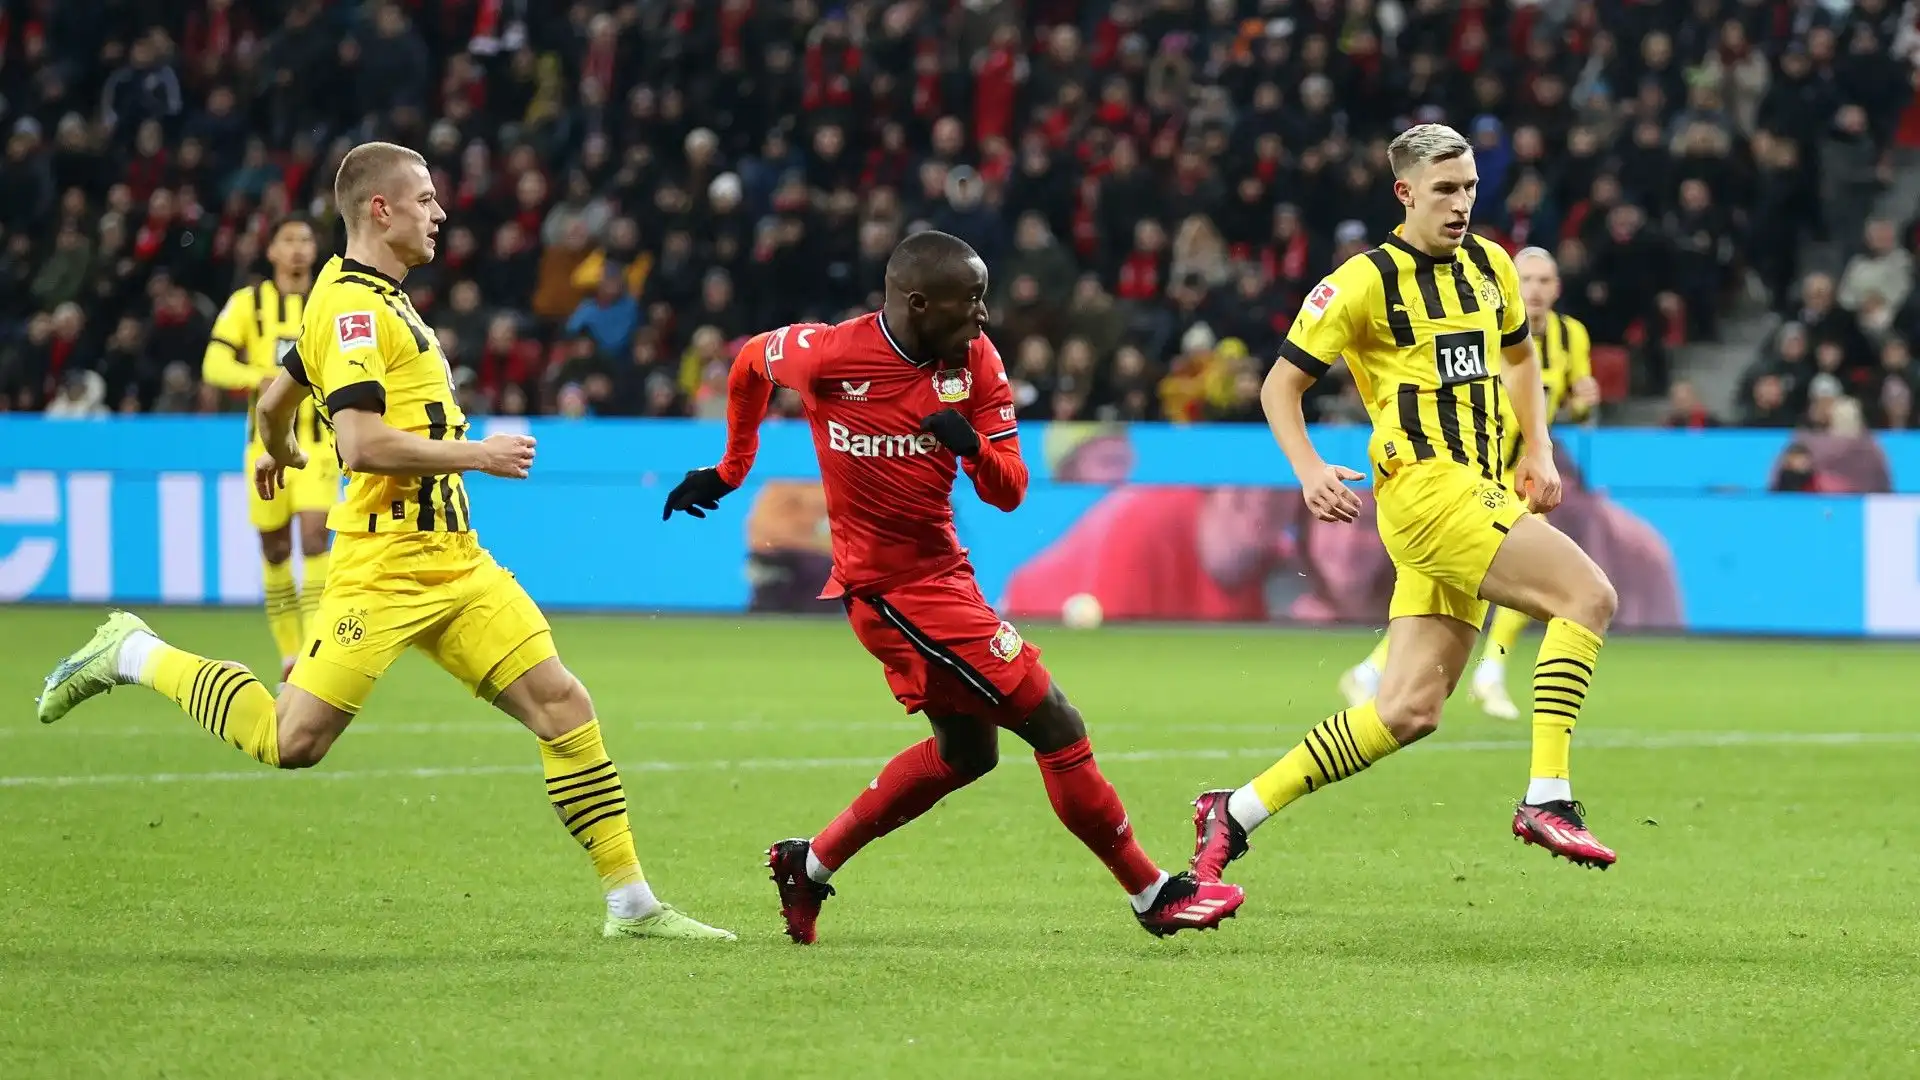 Veloce e dotato di ottima tecnica, Moussa Diaby è un calciatore completo